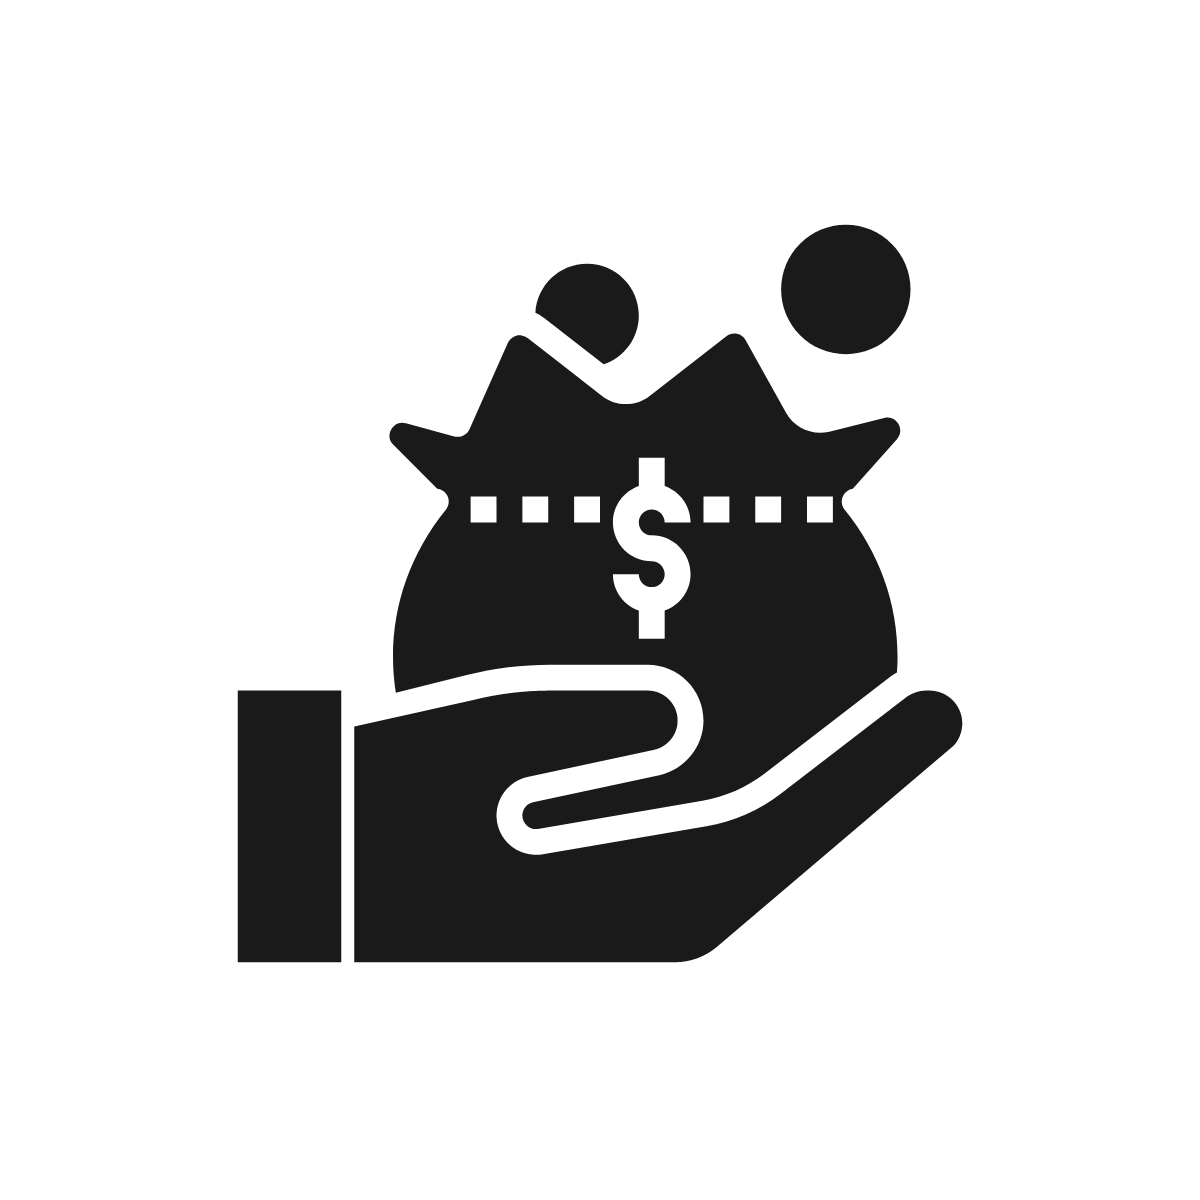 Funding Icon